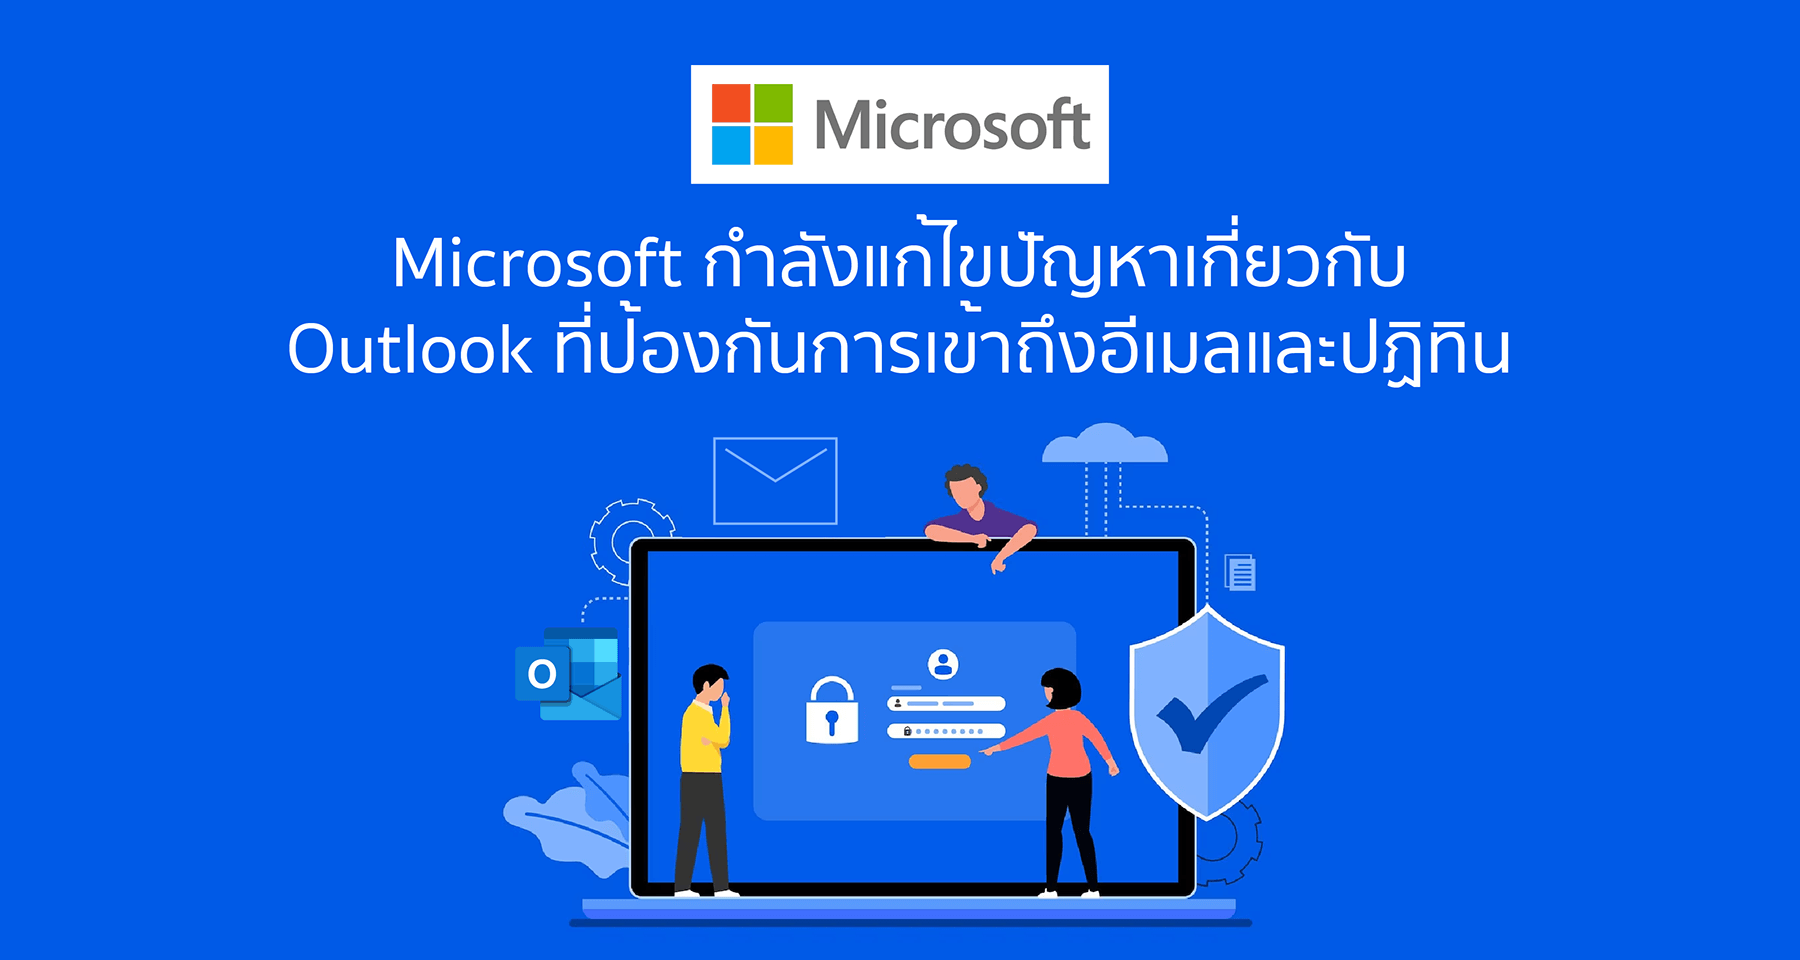 Microsoft กําลังแก้ไขปัญหาเกี่ยวกับ Outlook ที่ป้องกันการเข้าถึงอีเมลและปฏิทิน